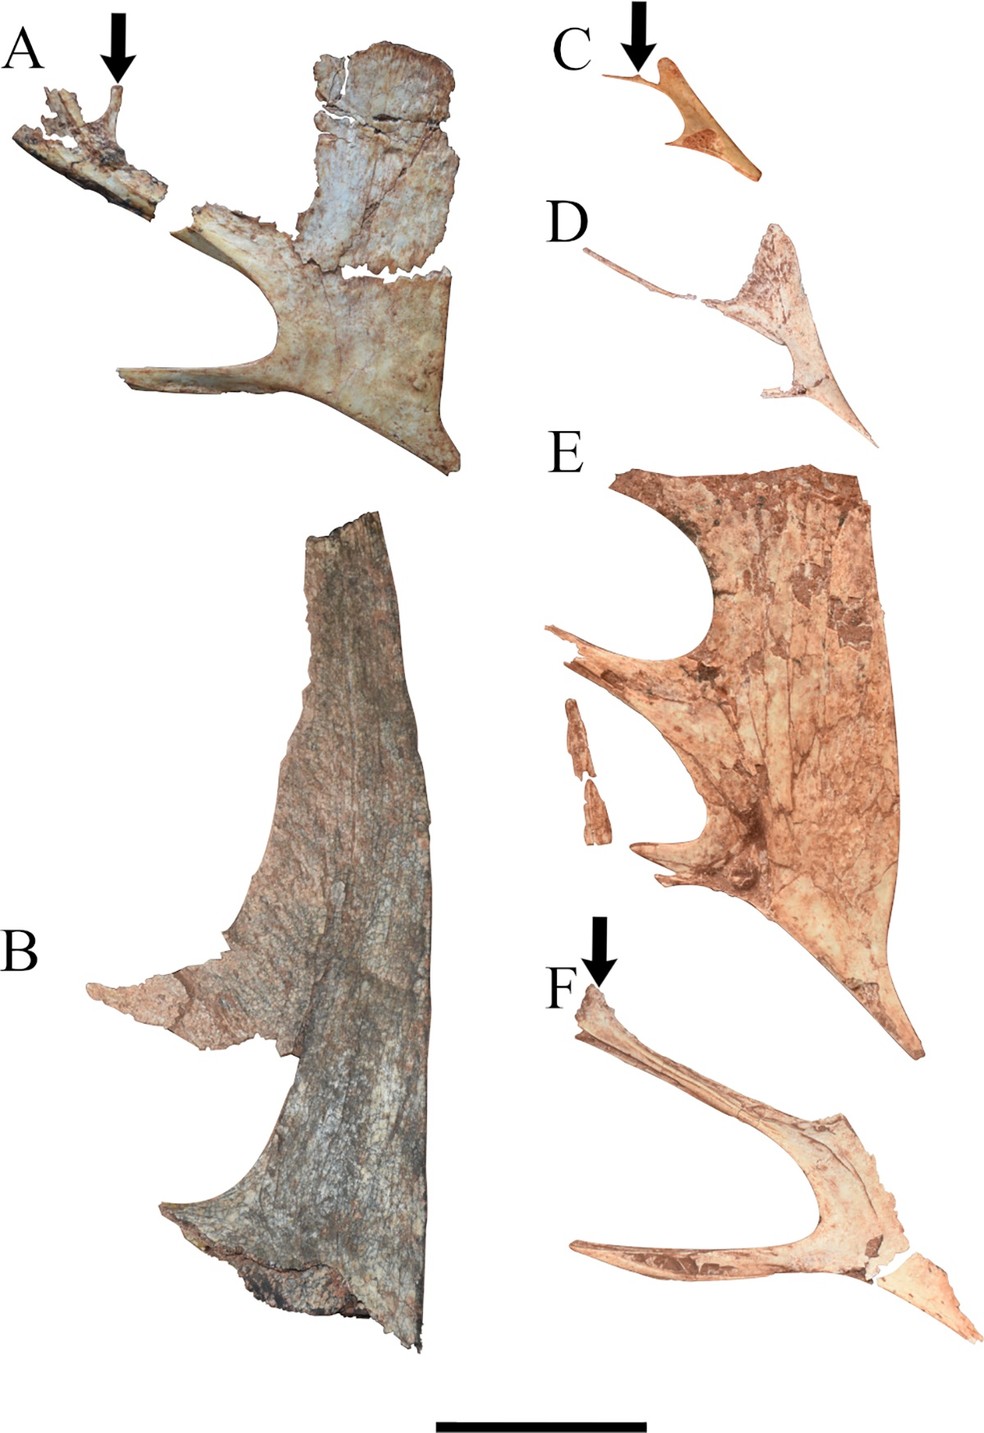  Fotografia de crânios pertencentes a vários espécimes de Caiuajara dobruskii — Foto: Canejo et.al 